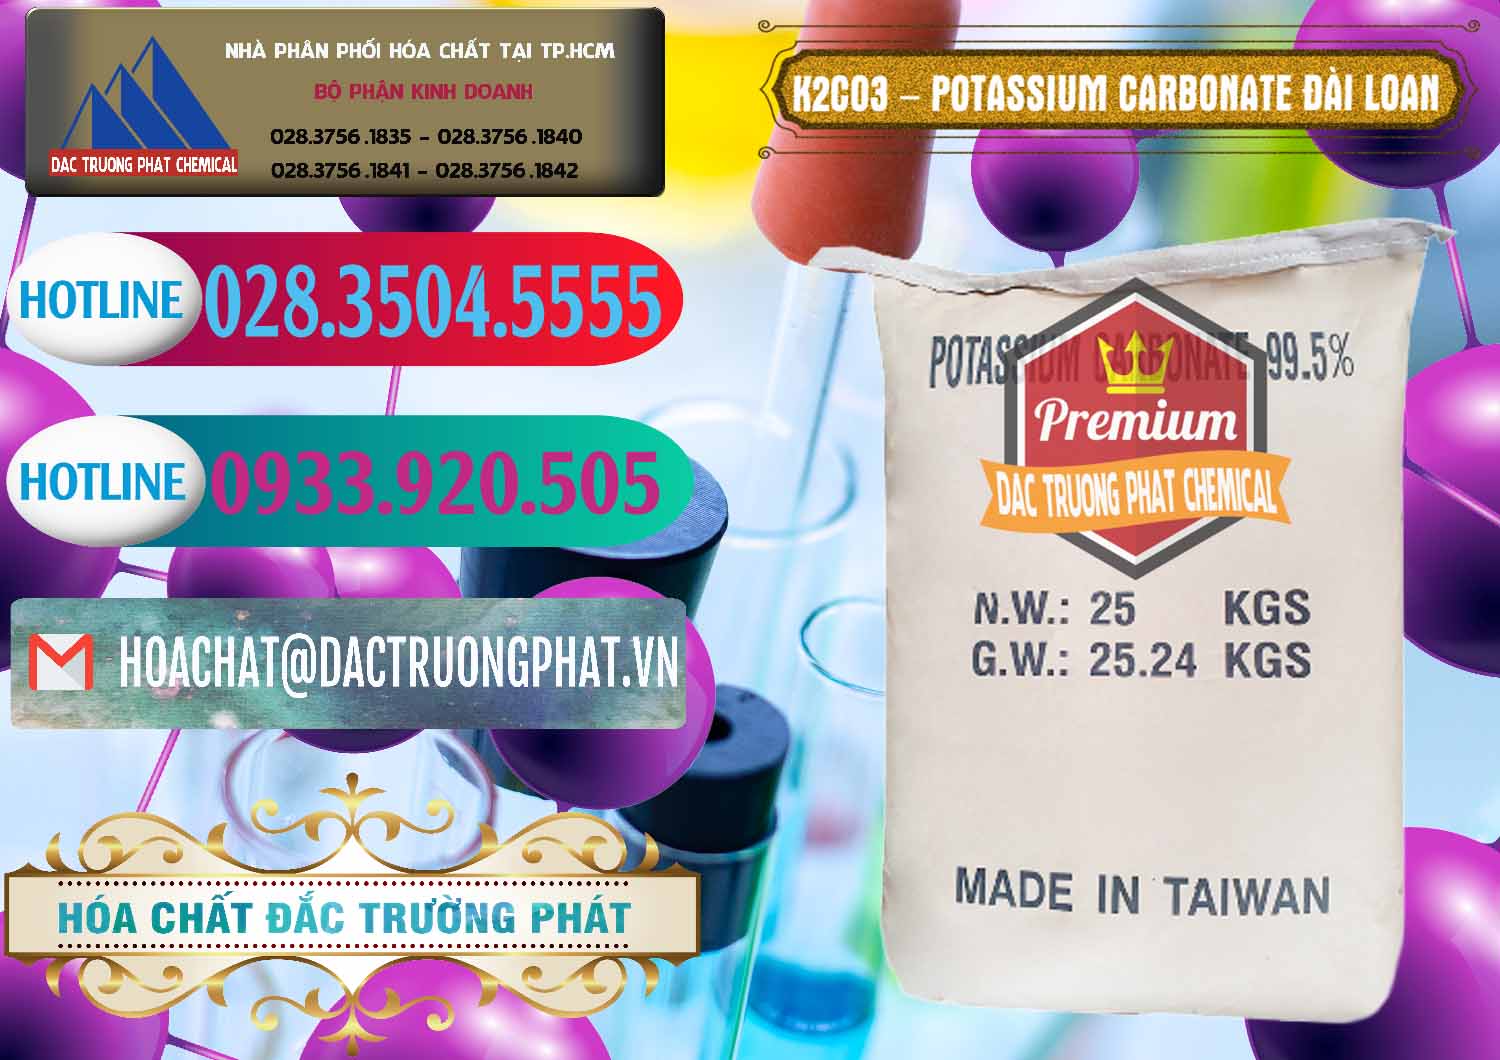 Nhà cung cấp ( bán ) K2Co3 – Potassium Carbonate Đài Loan Taiwan - 0474 - Kinh doanh ( phân phối ) hóa chất tại TP.HCM - truongphat.vn